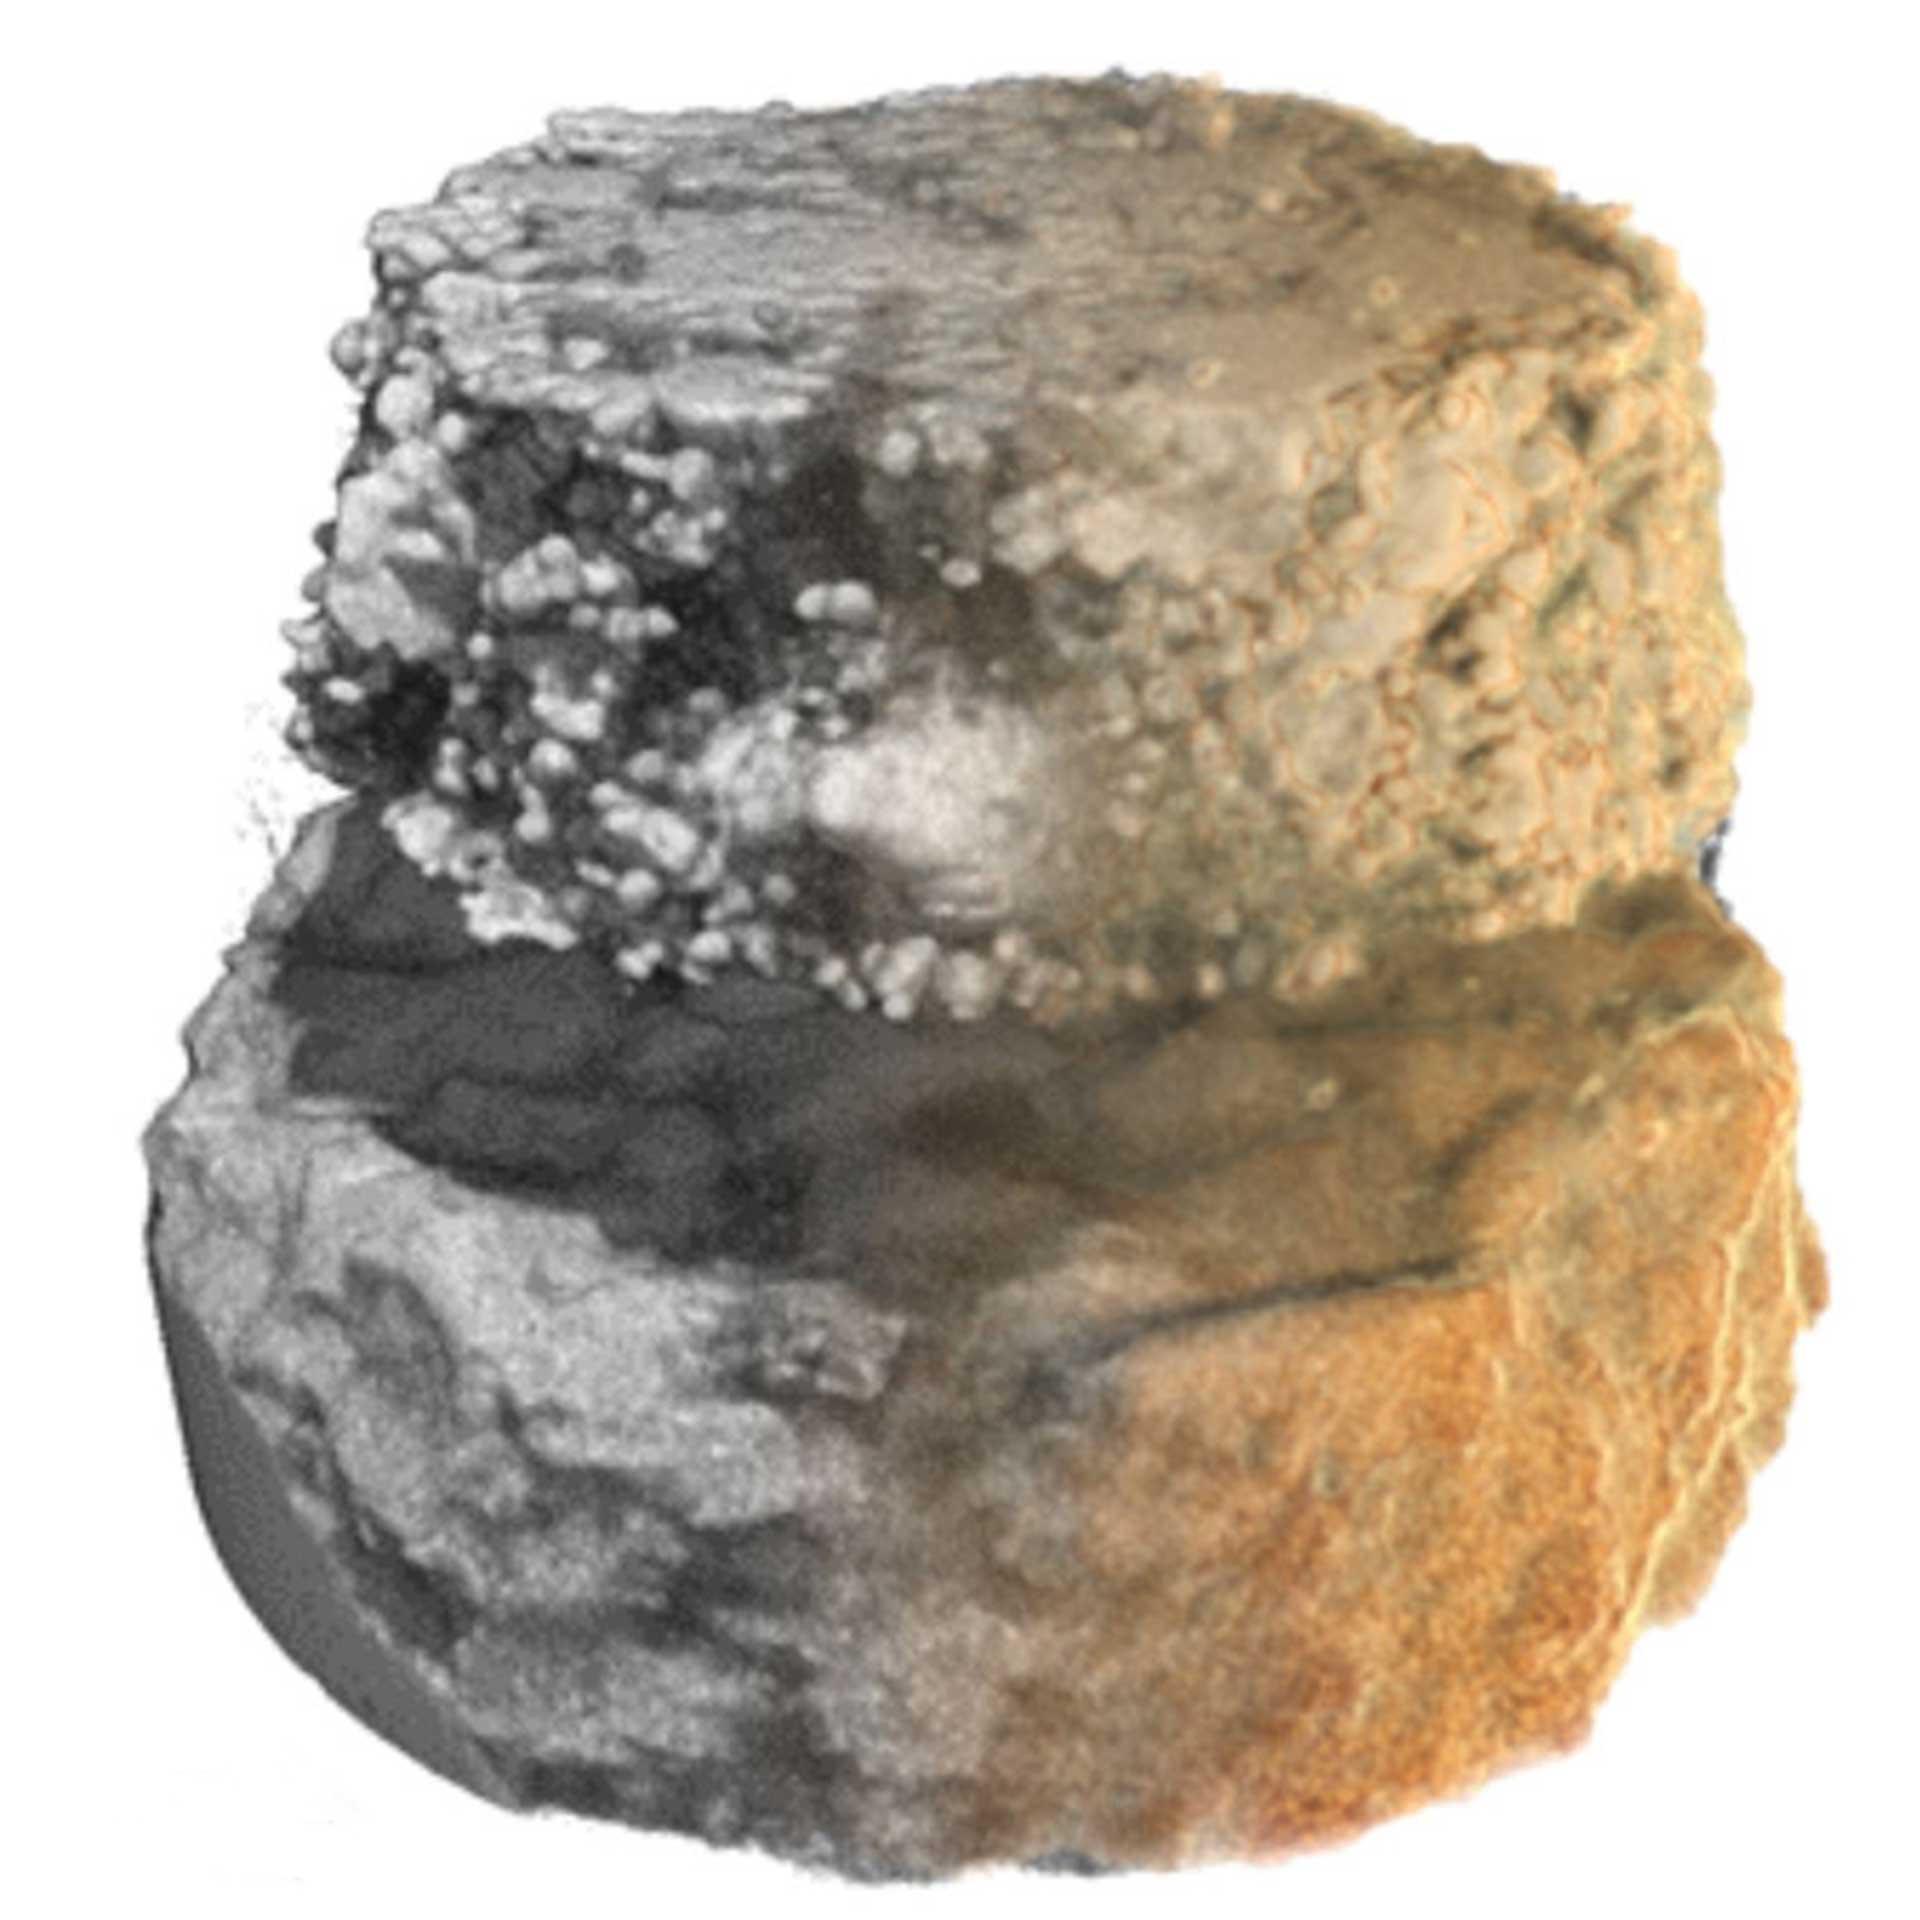 微晶碳酸盐微孔的微柱体，使用多尺度工作流从岩相薄片中提取（样品宽度50 µm）。